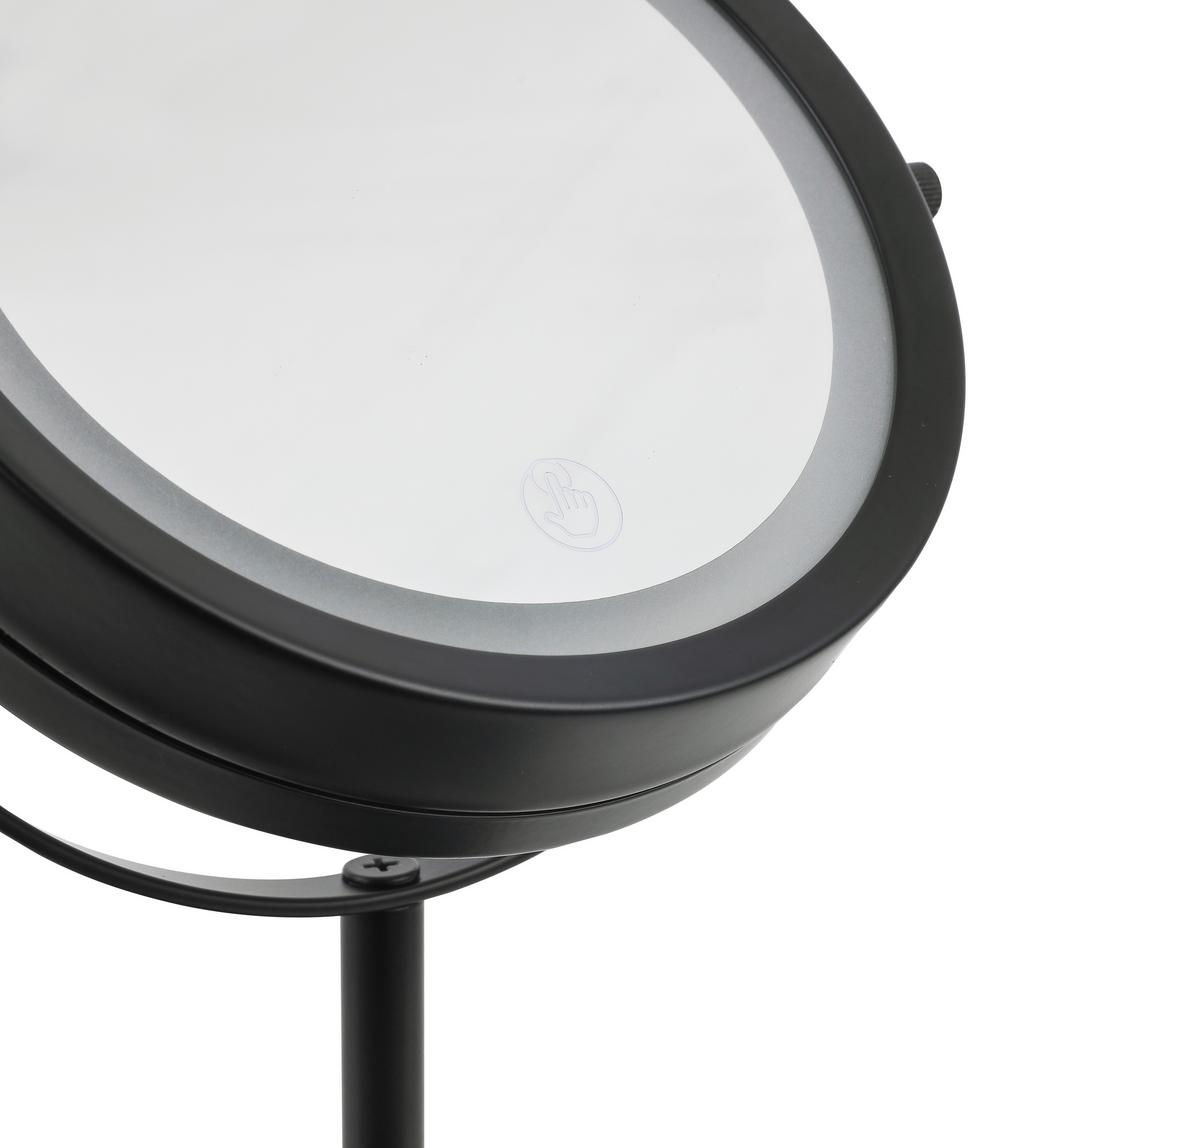 Leuchtspiegel Mirri 1 in Schwarz ca. 21x32x21cm online kaufen ➤ mömax